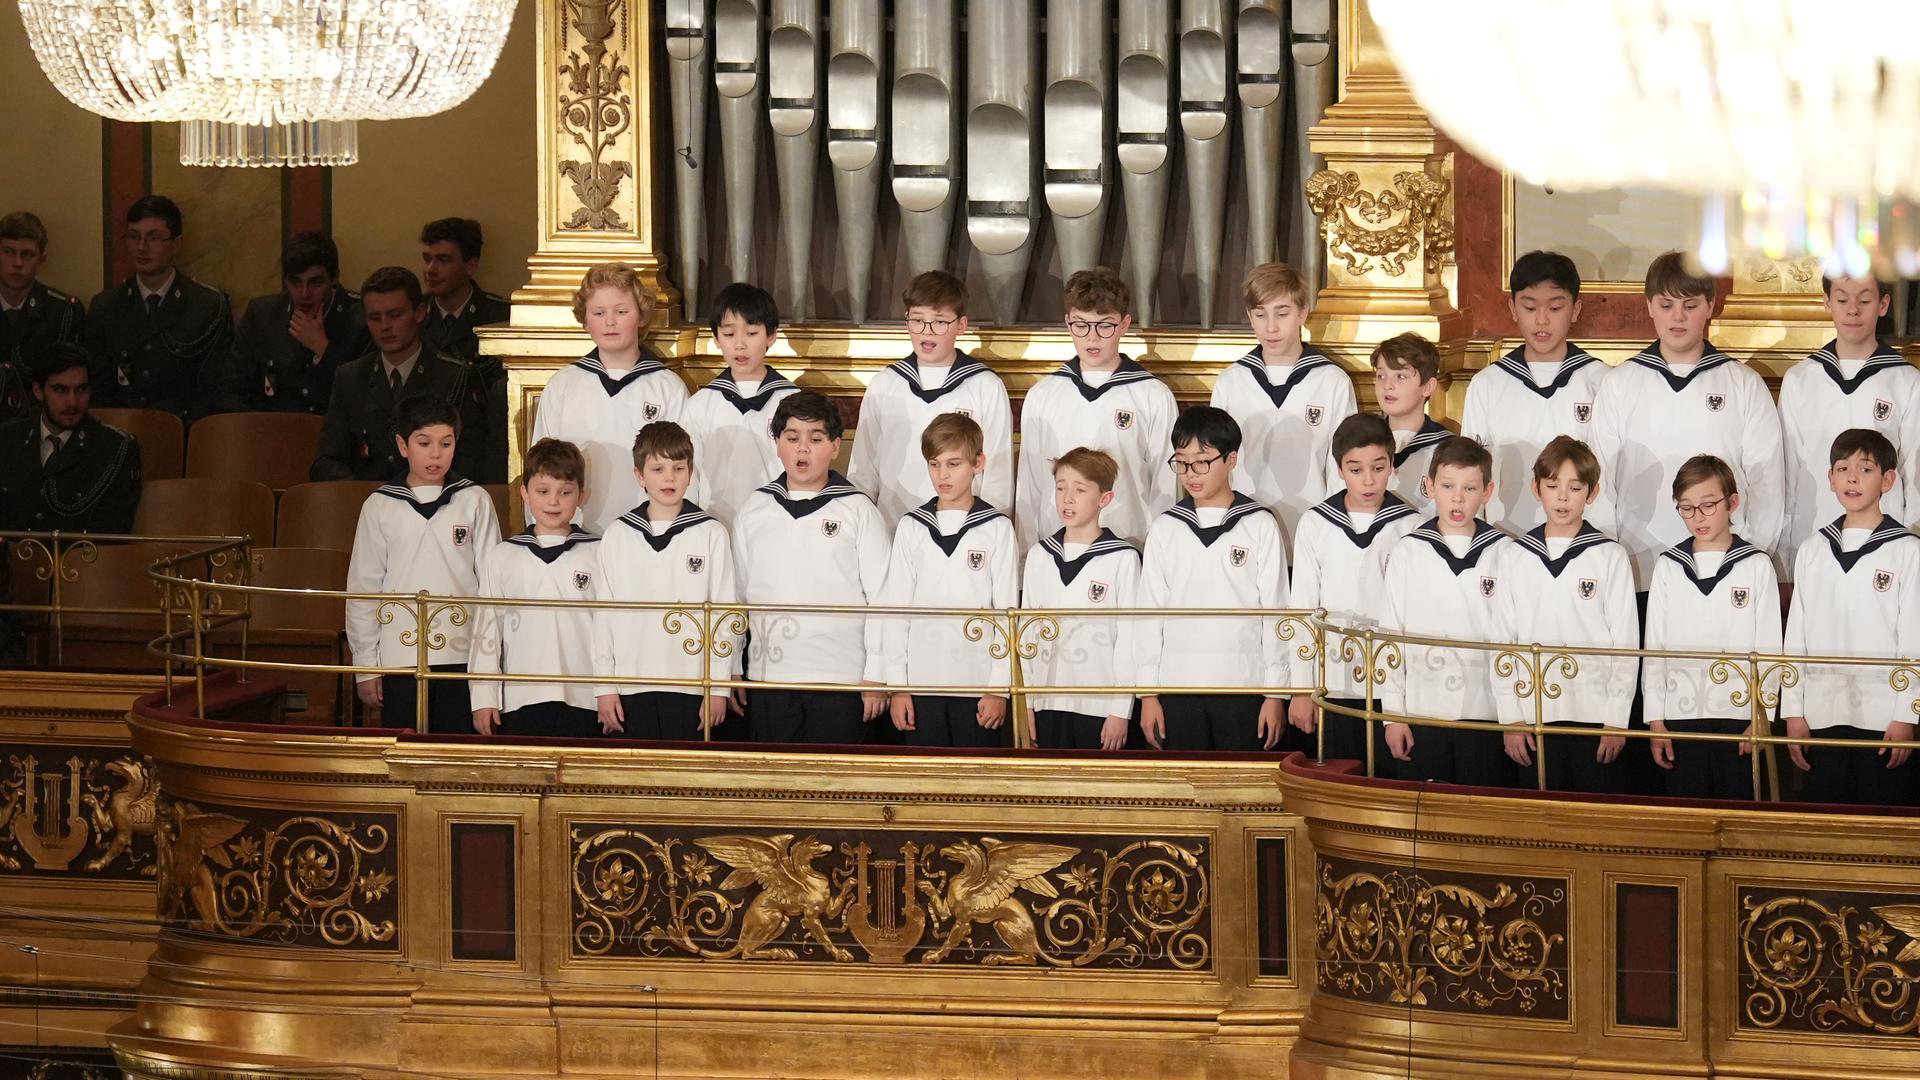 Singender Chor in Matrosen-Uniformen auf einer vergoldeten Empore vor Orgelpfeifen